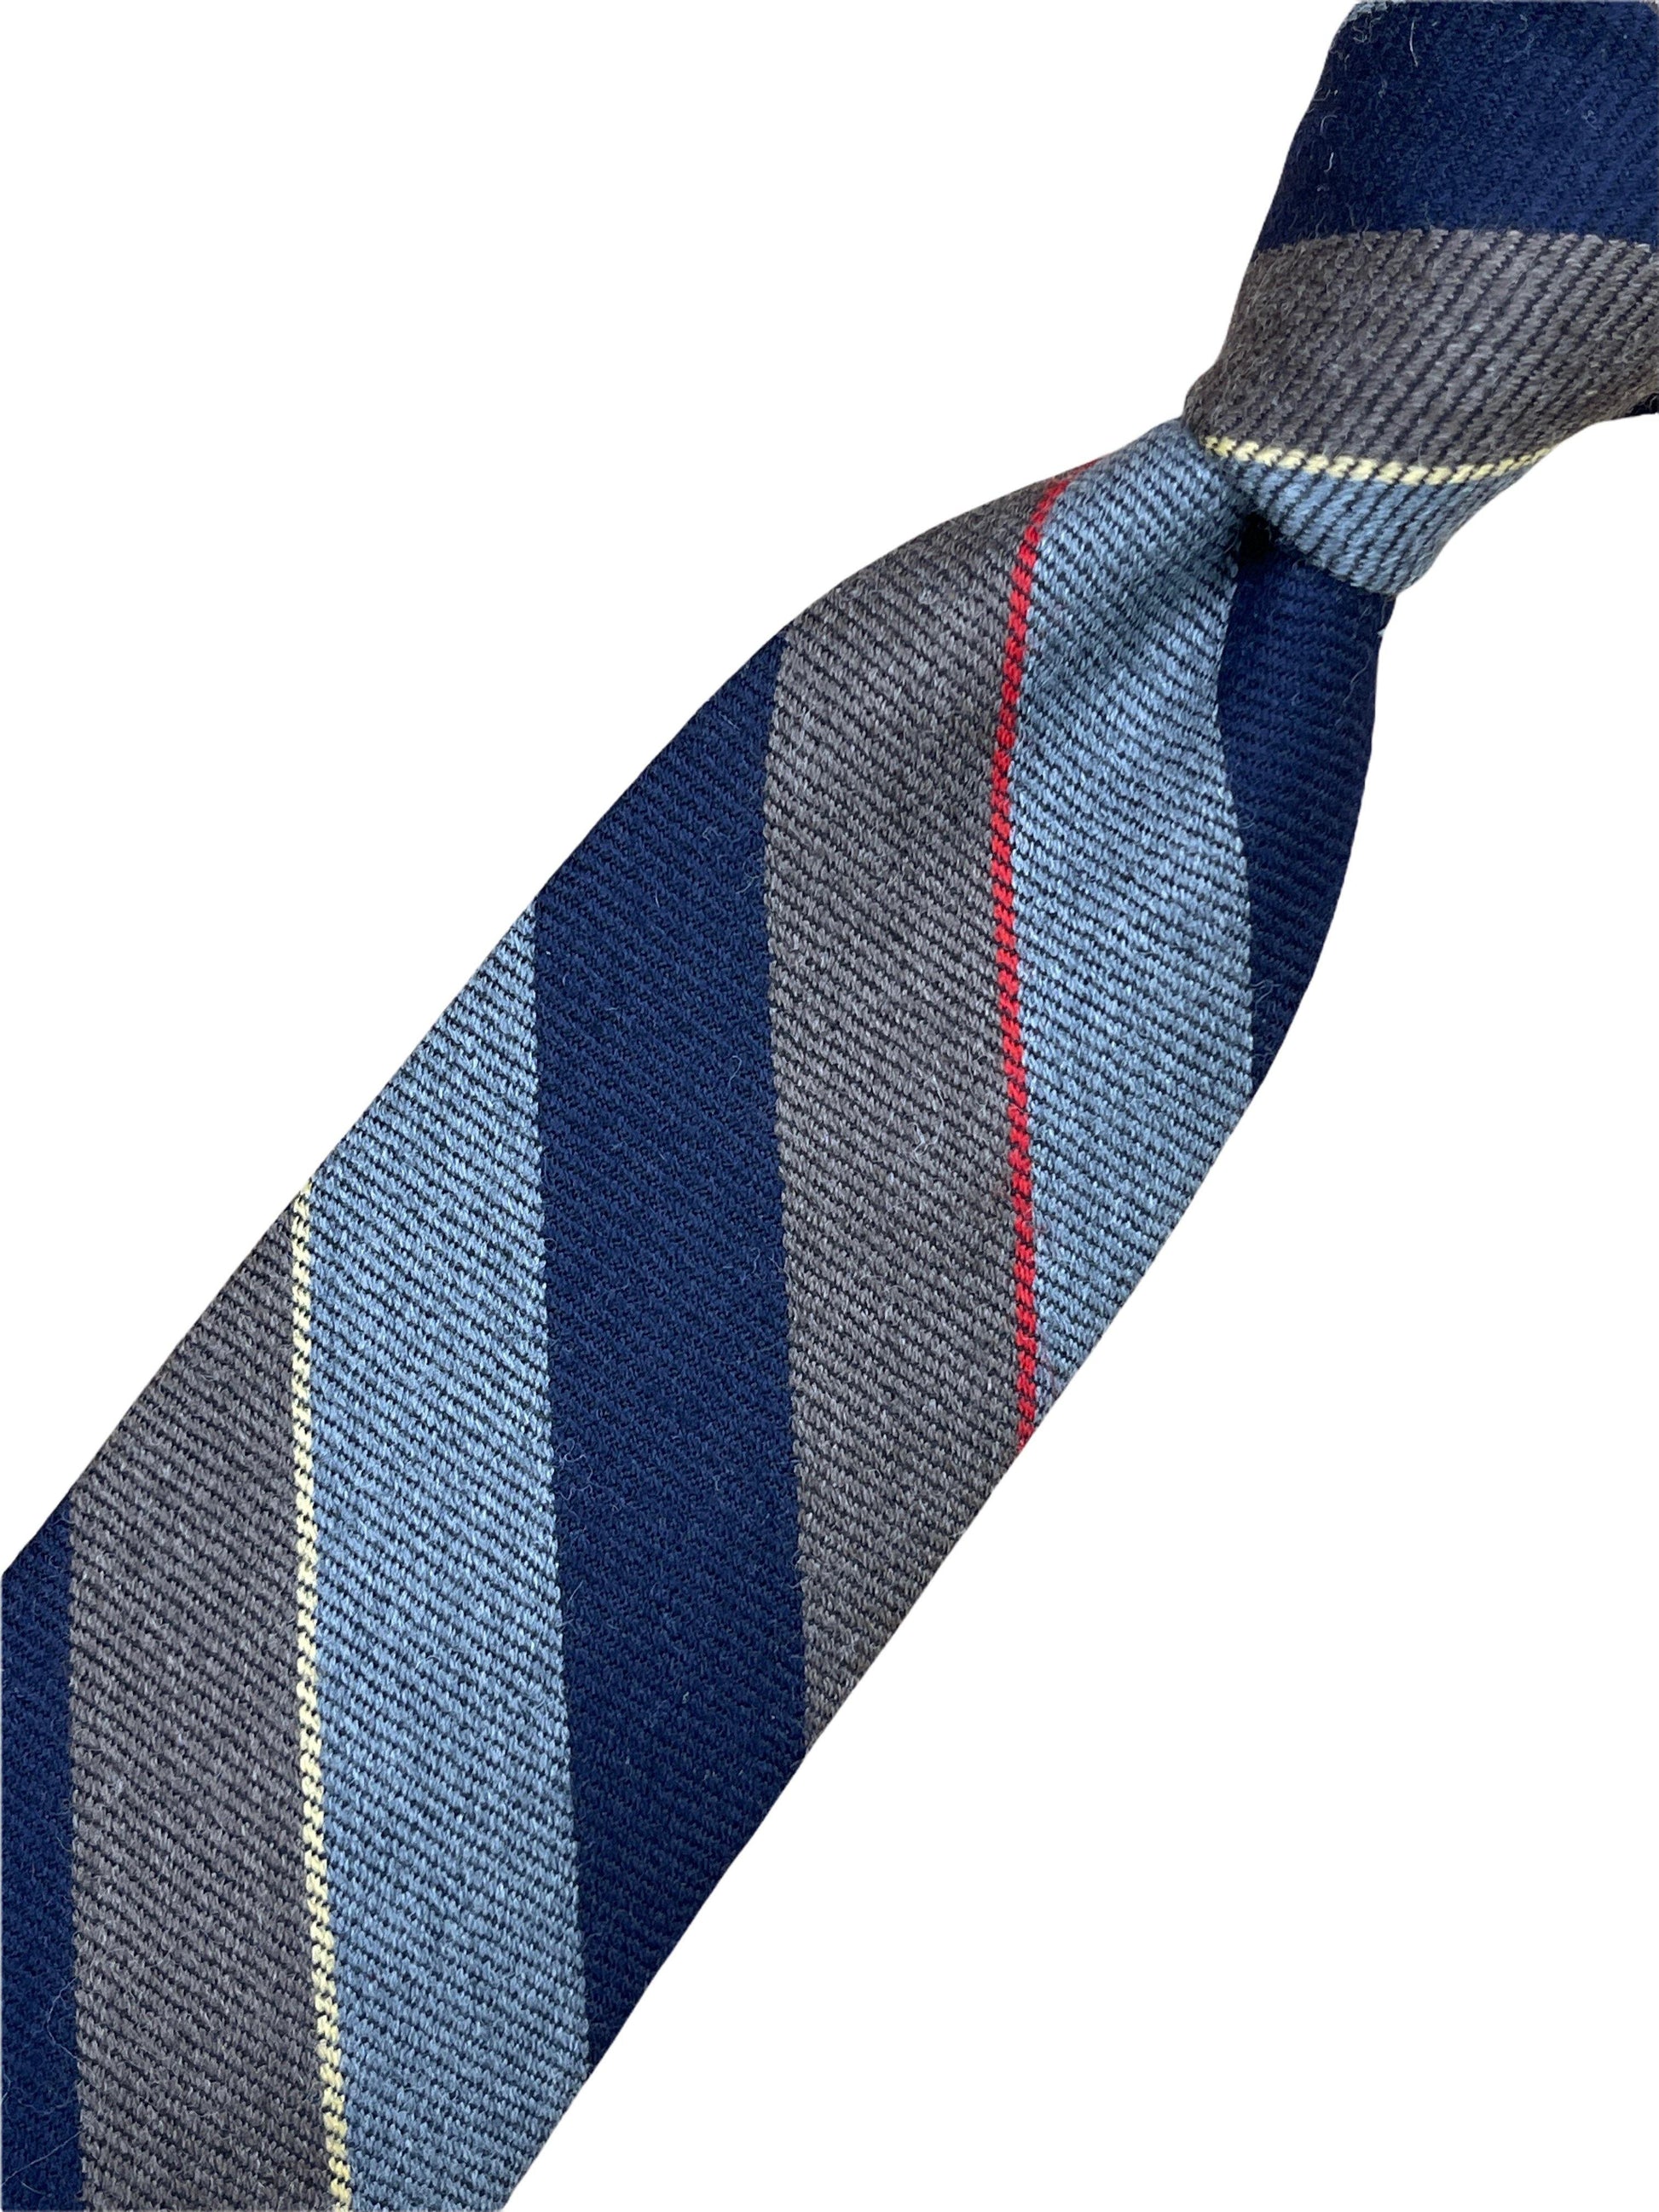 Harry Rosen navy, grey, brown striped wool tie. Genuine Design luxury consignment 